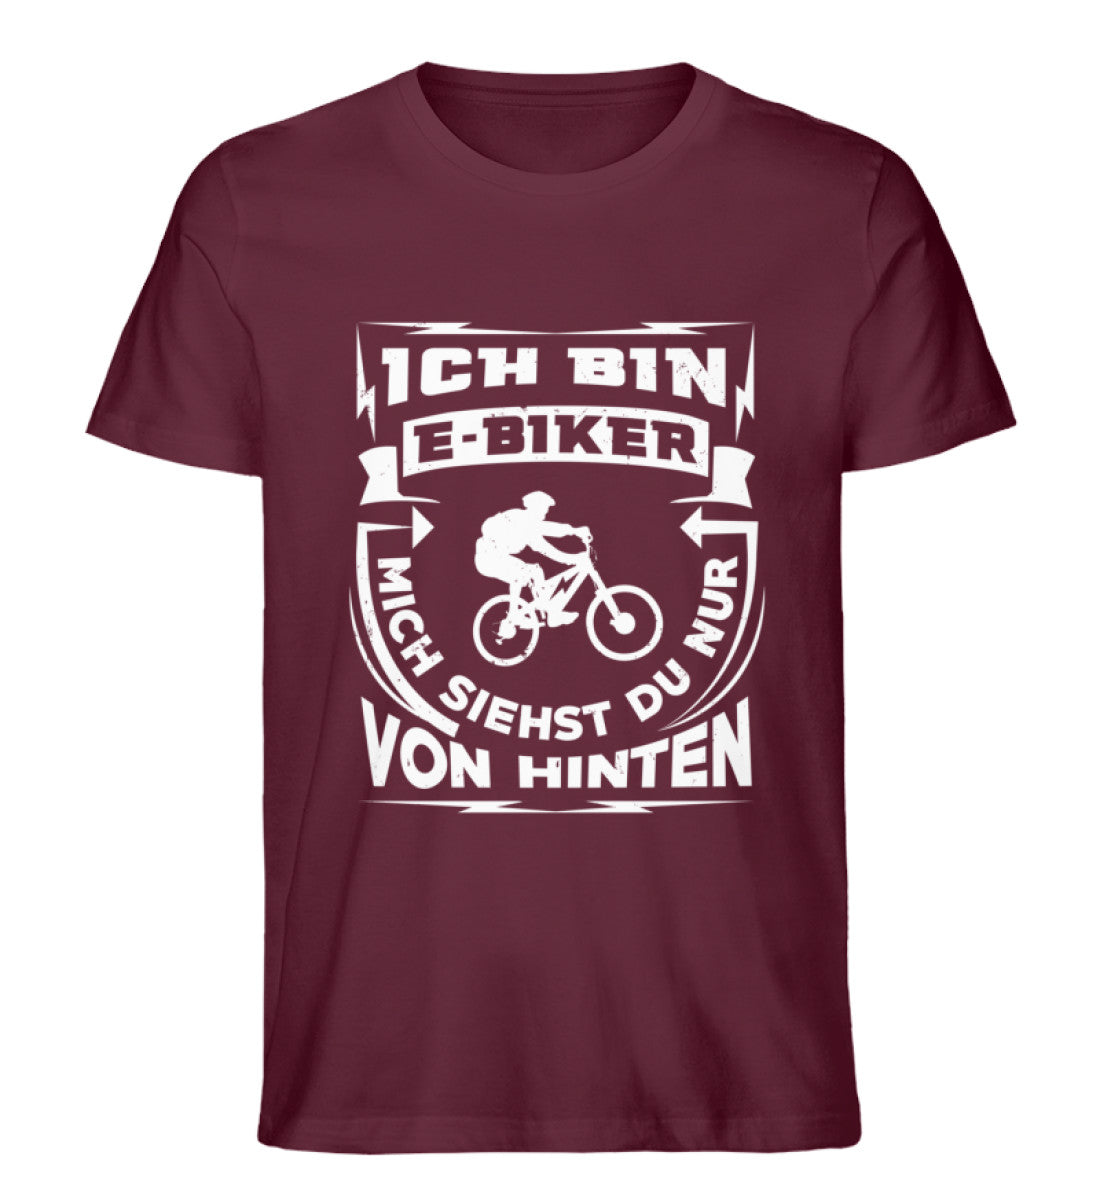 Bin ein E-BIker - Siehst mich von hinten - Herren Premium Organic T-Shirt e-bike Weinrot